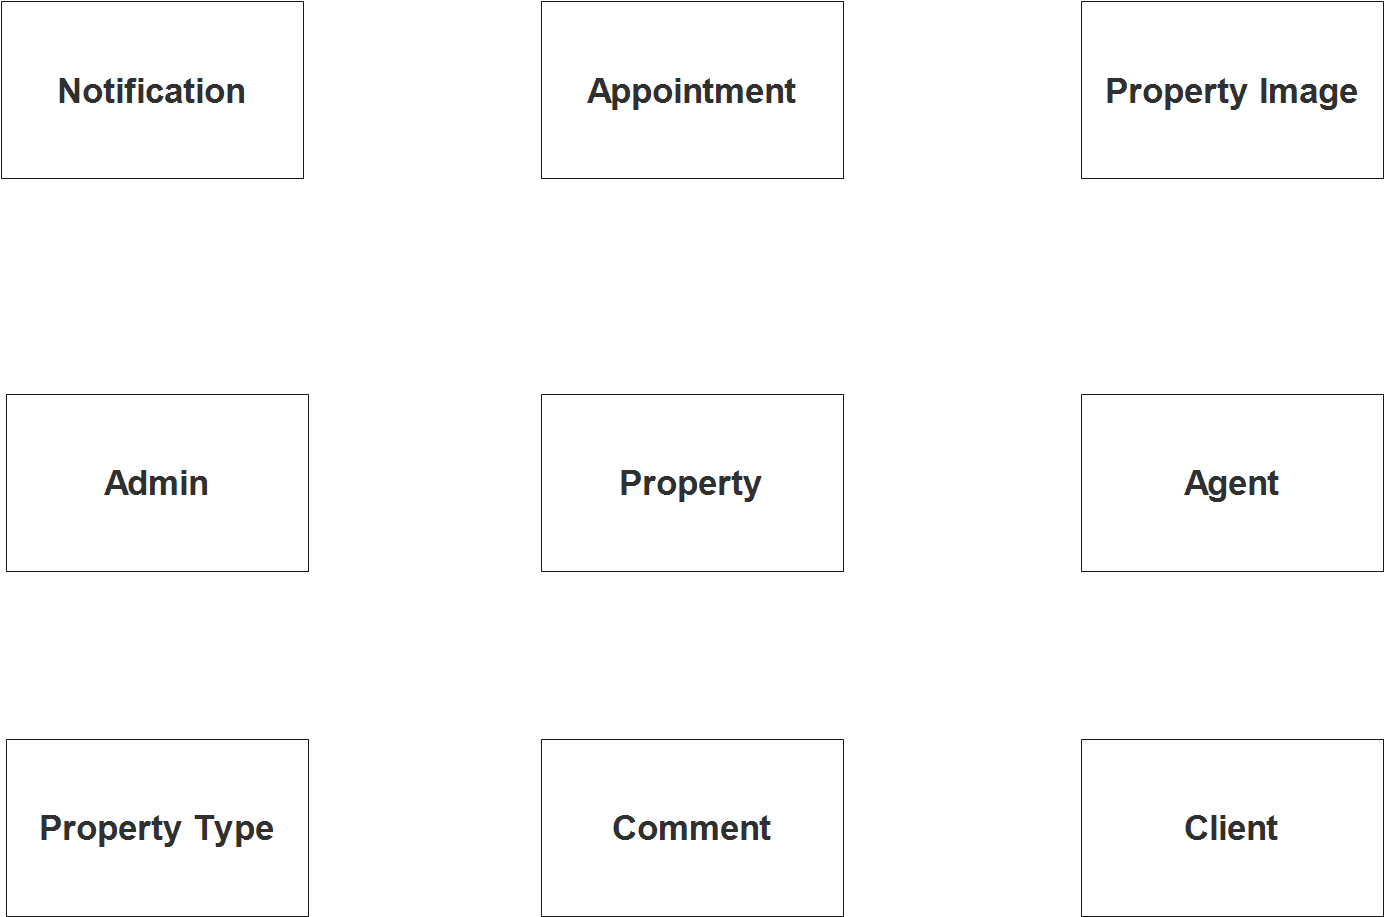 Real Estate Property Management System ER Diagram INetTutor